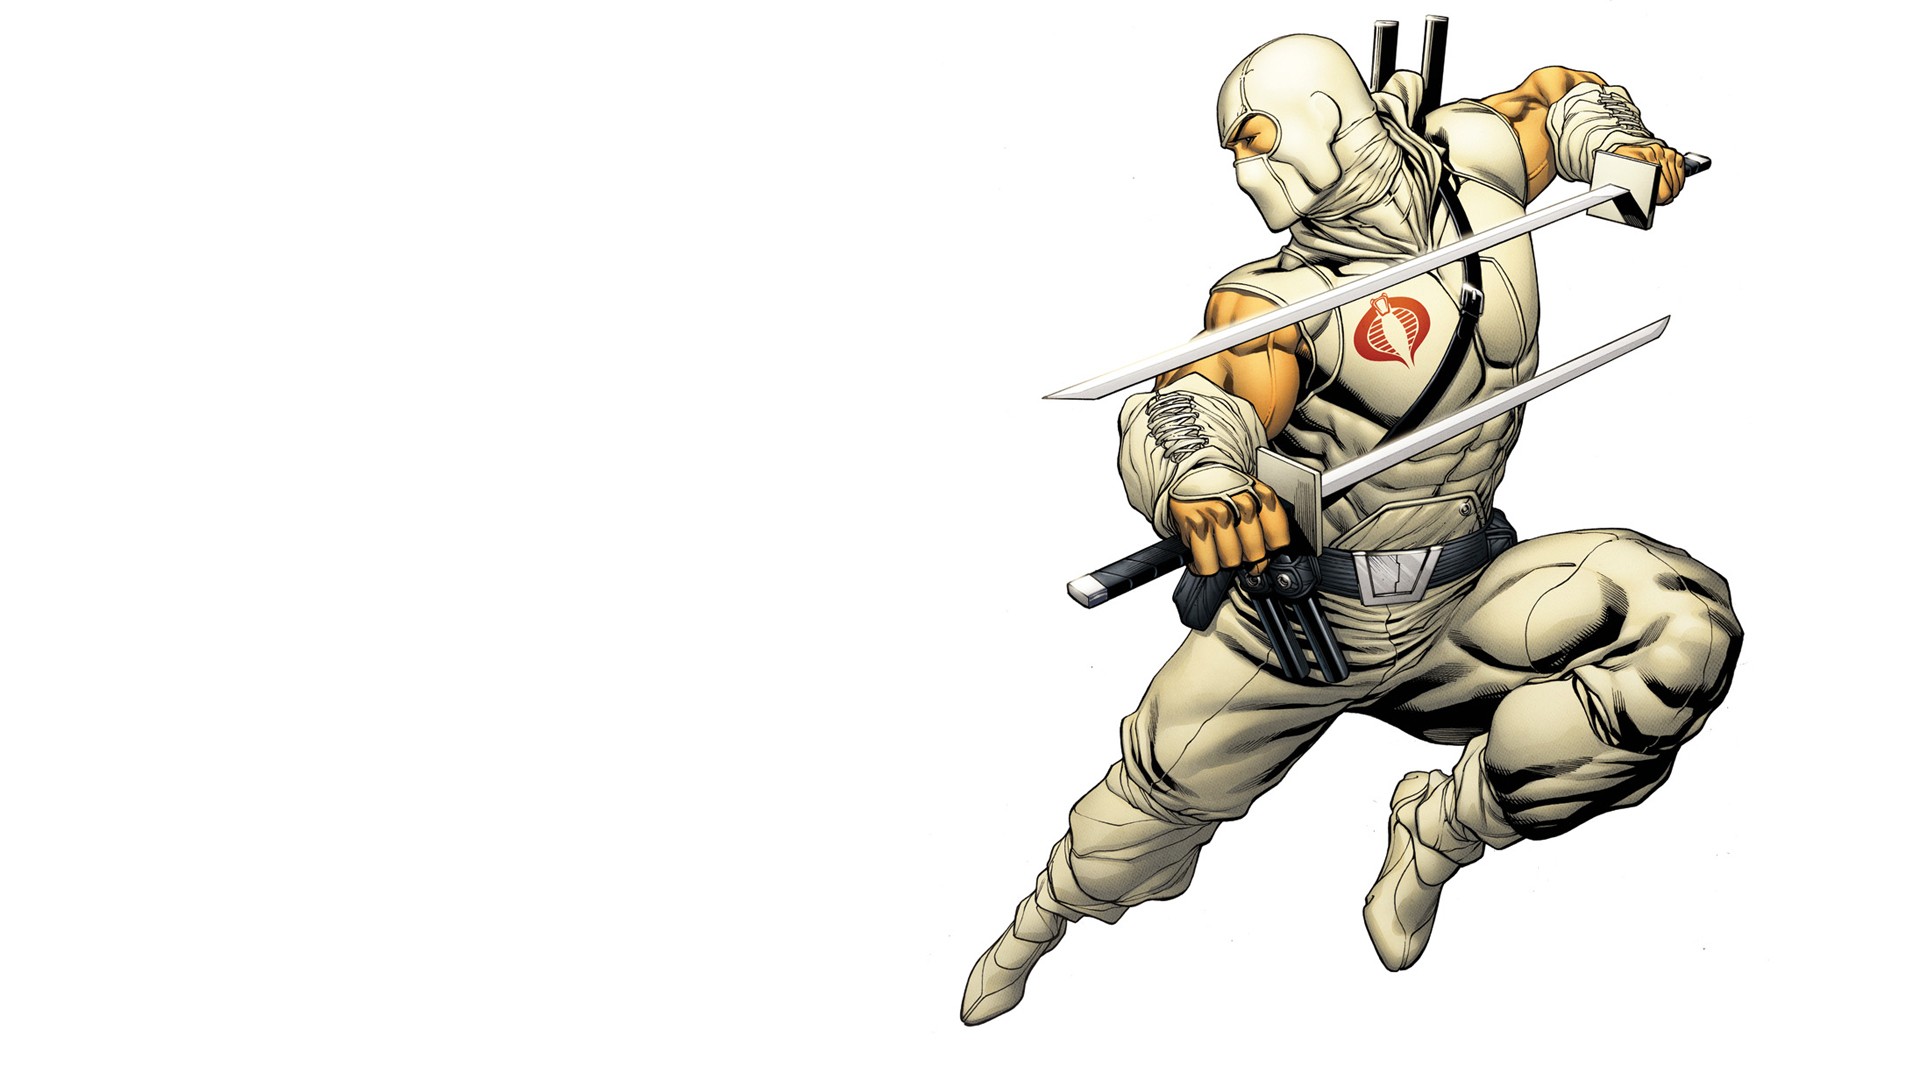 Storm Shadow GI Joe White Sword Katana comics weapons wallpaper